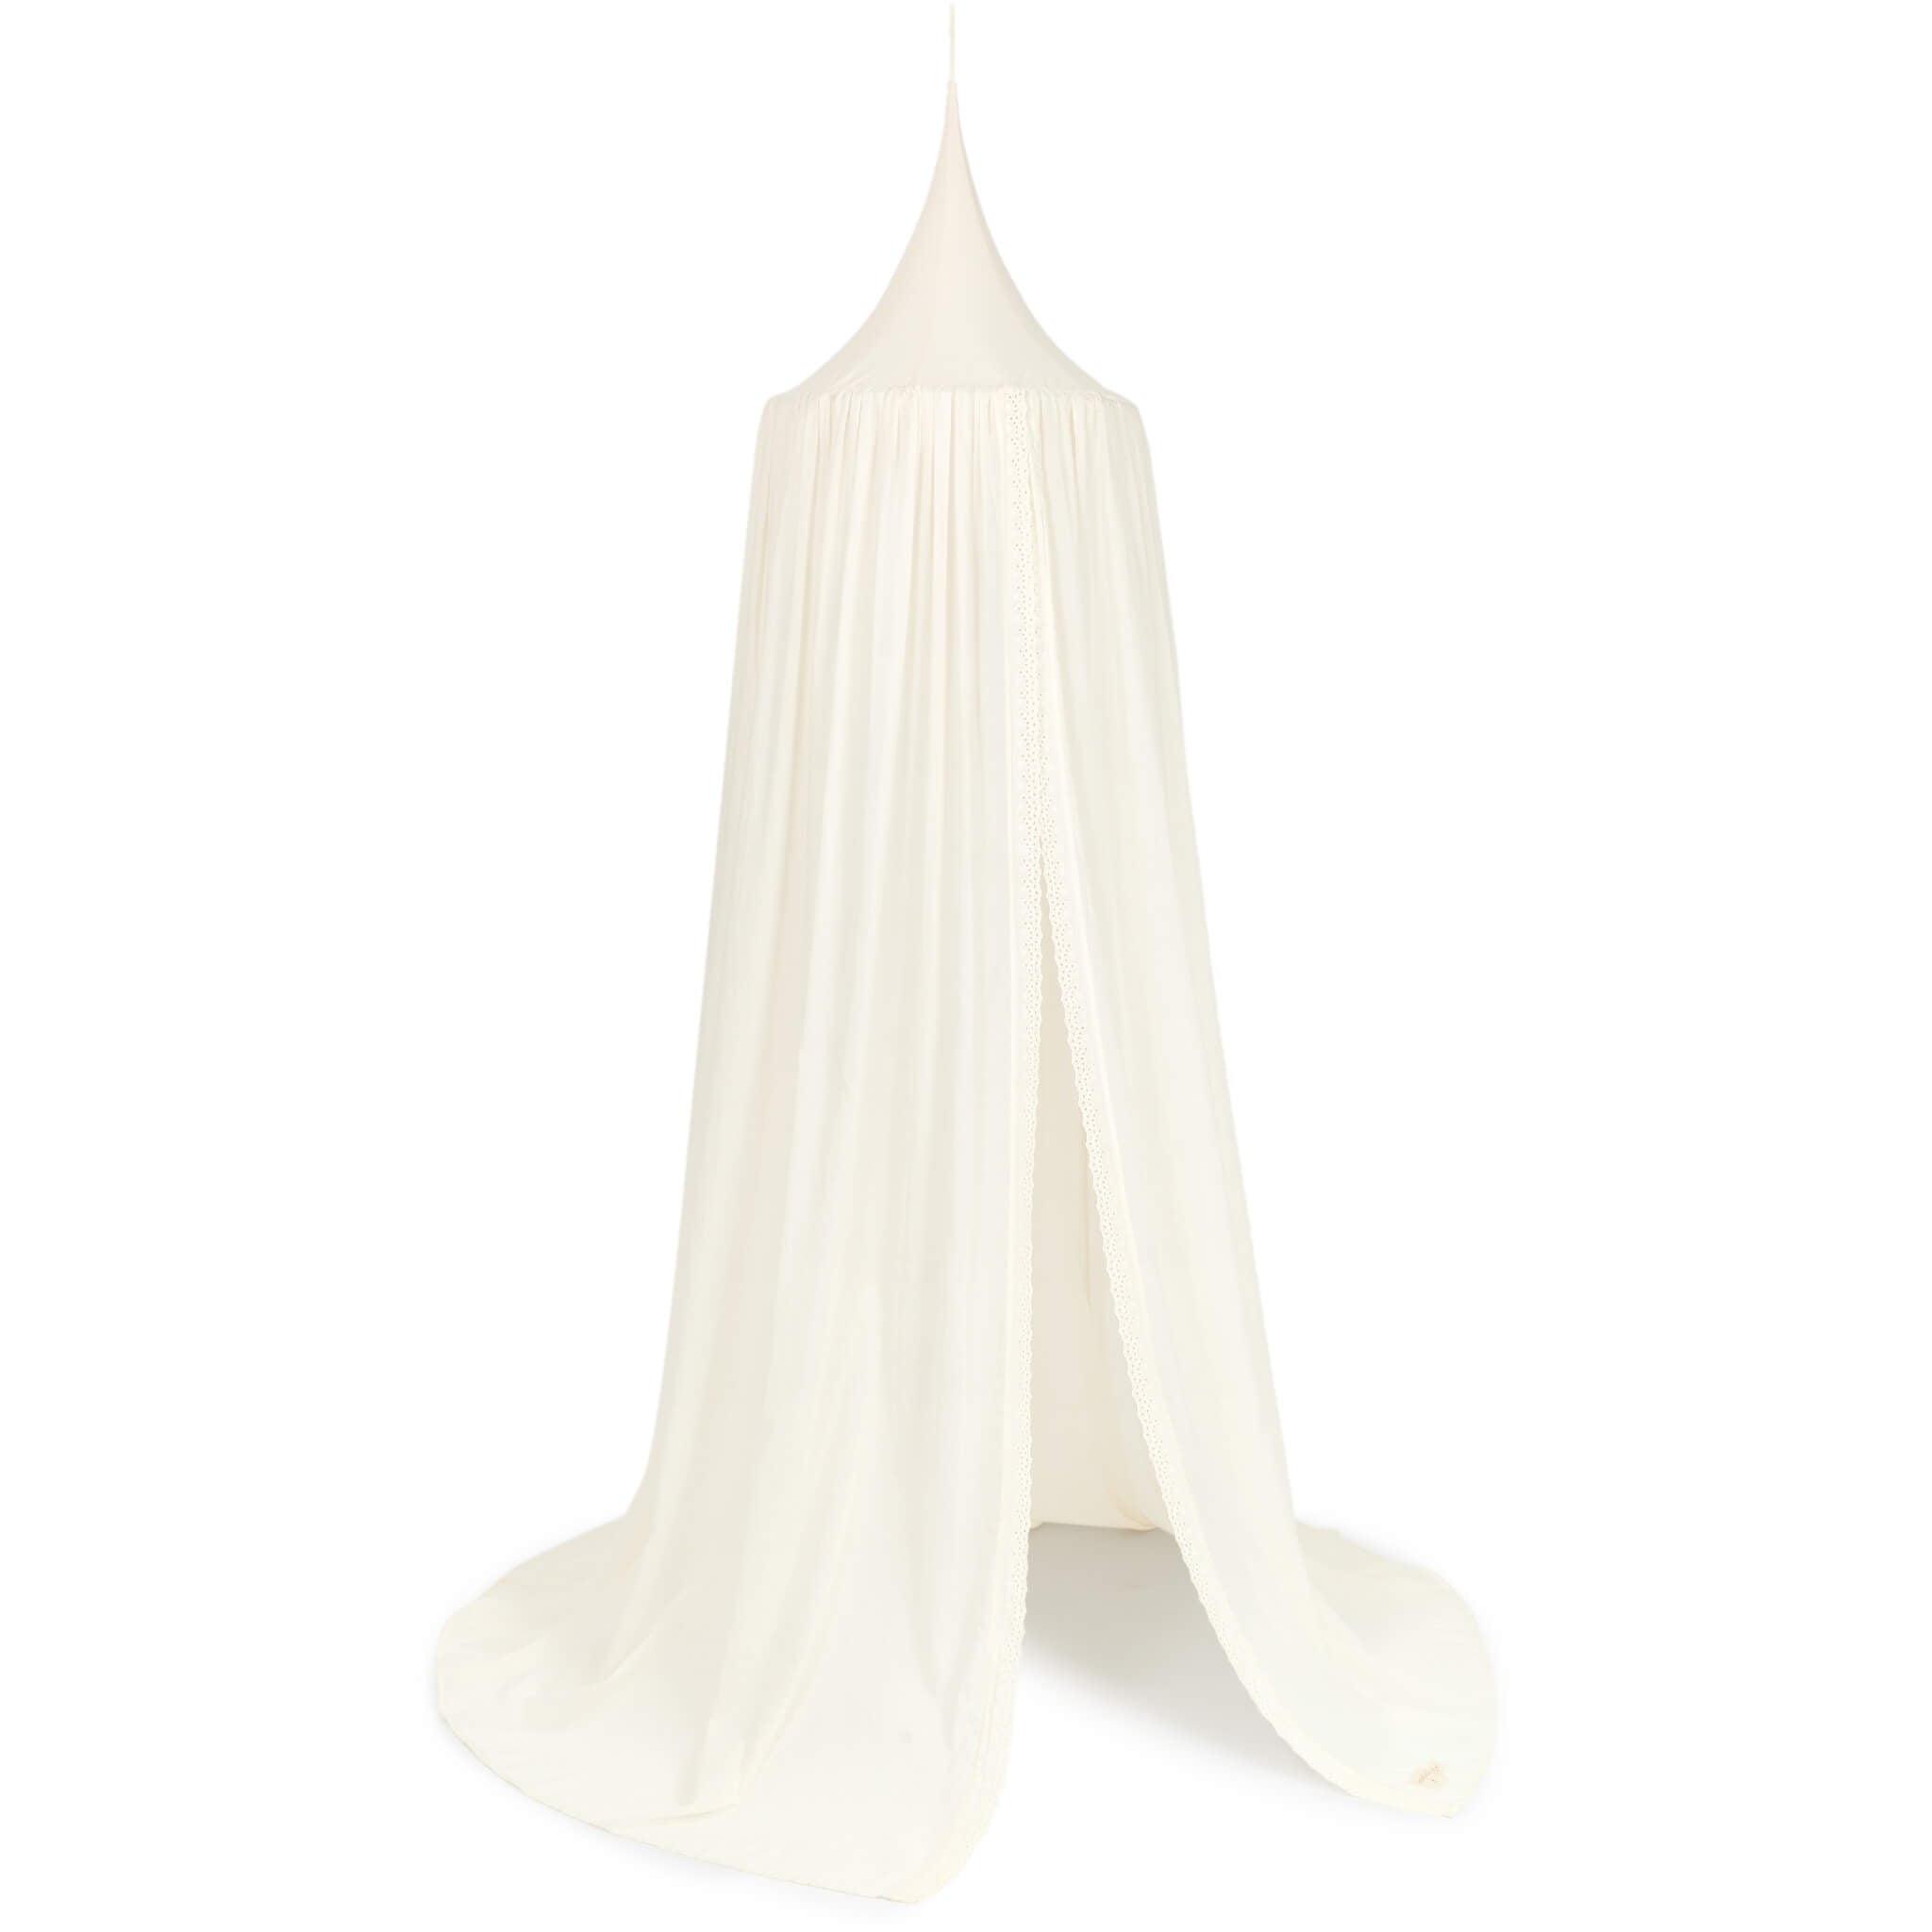 Nobodinoz Vera Bed Canopy White Lace